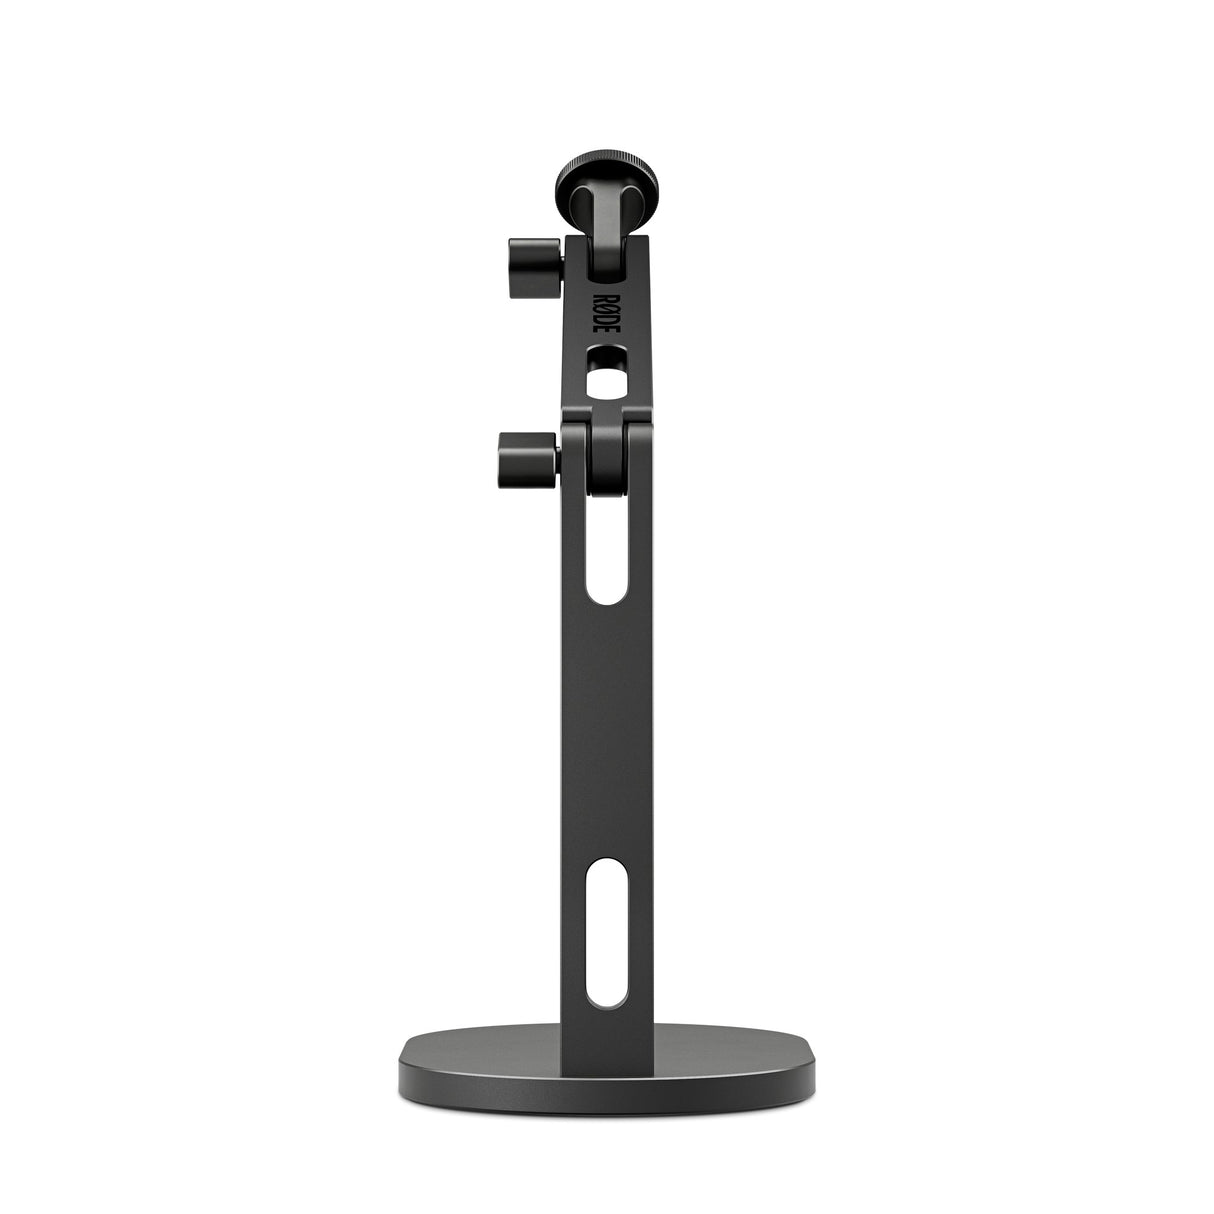 RODE DS2 Desktop Studio Arm for Microphones, Cameras, Smartphones, and Lights